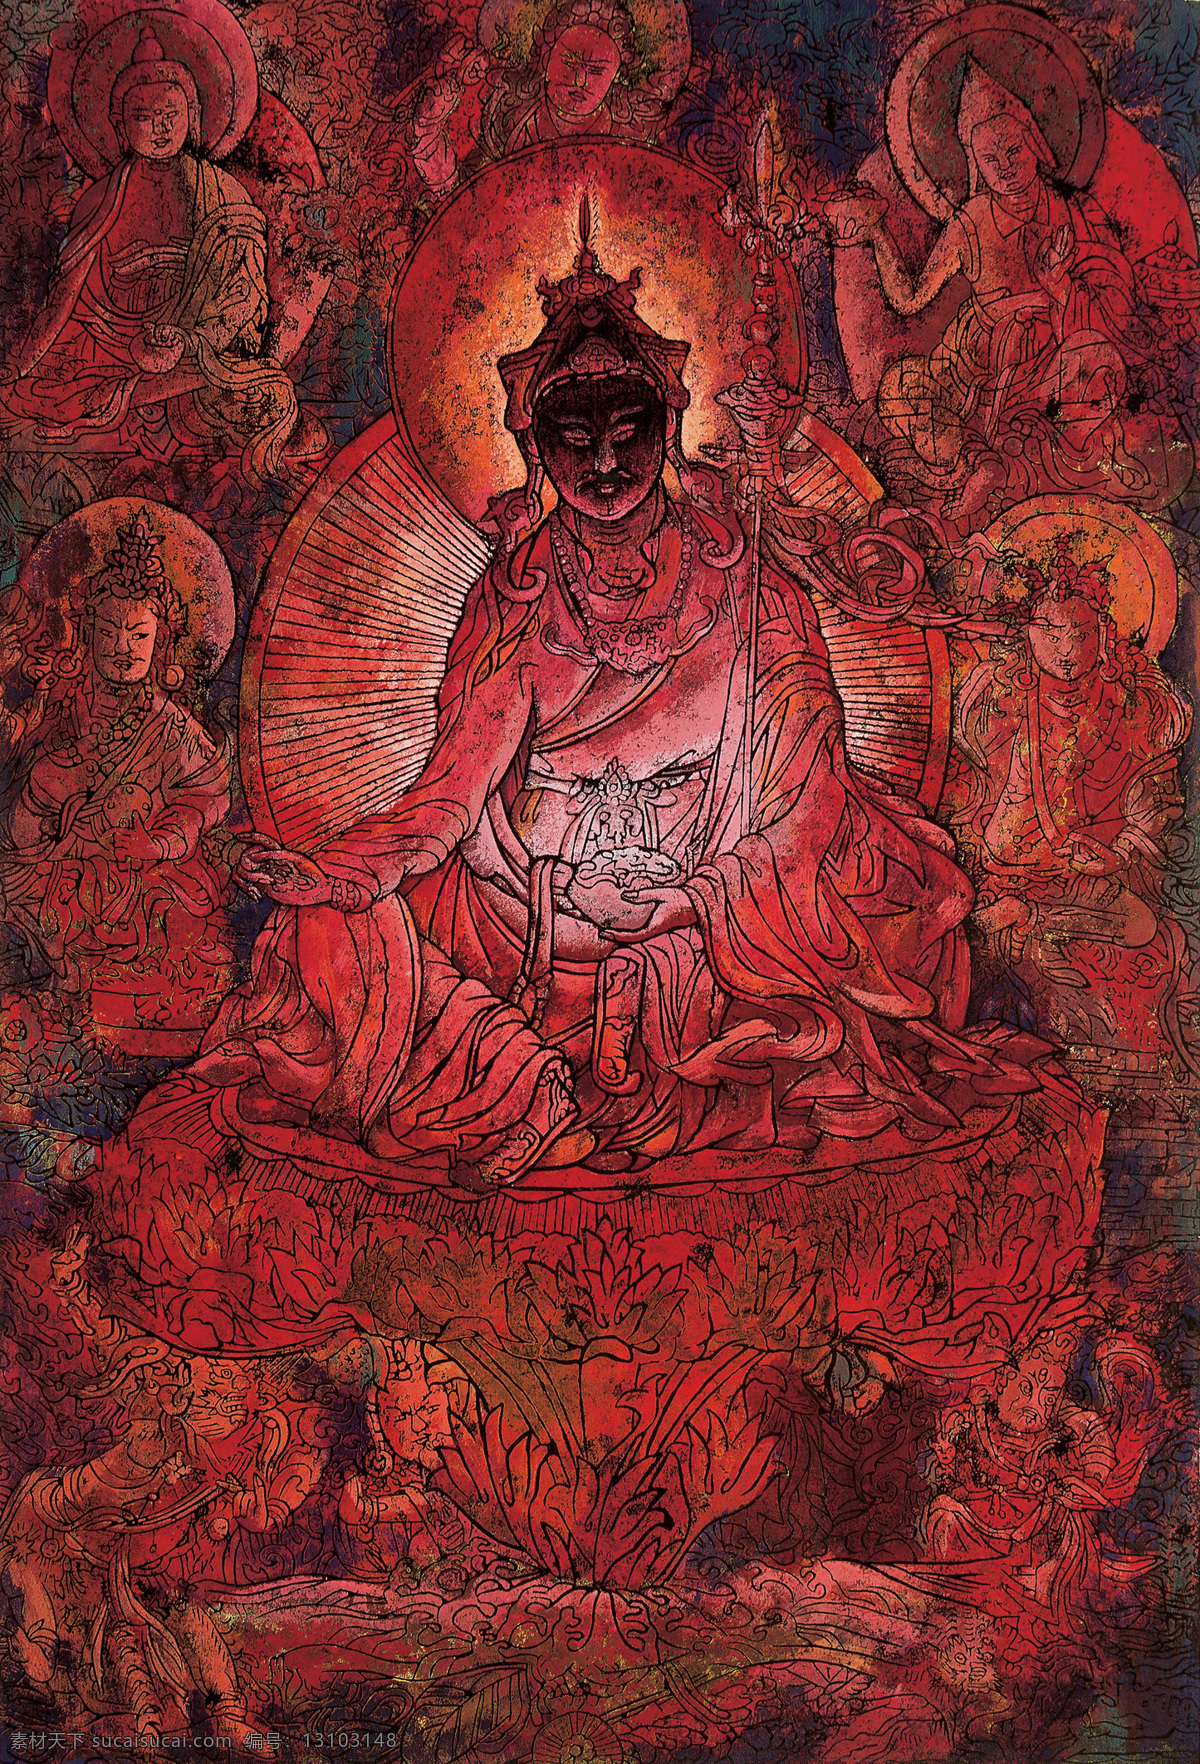 版画 作品 藏族 抽象 抽象画 抽象色彩 绘画 精美 民族 手绘 西藏 黄勇 木版 祥巴 艺术 文化艺术